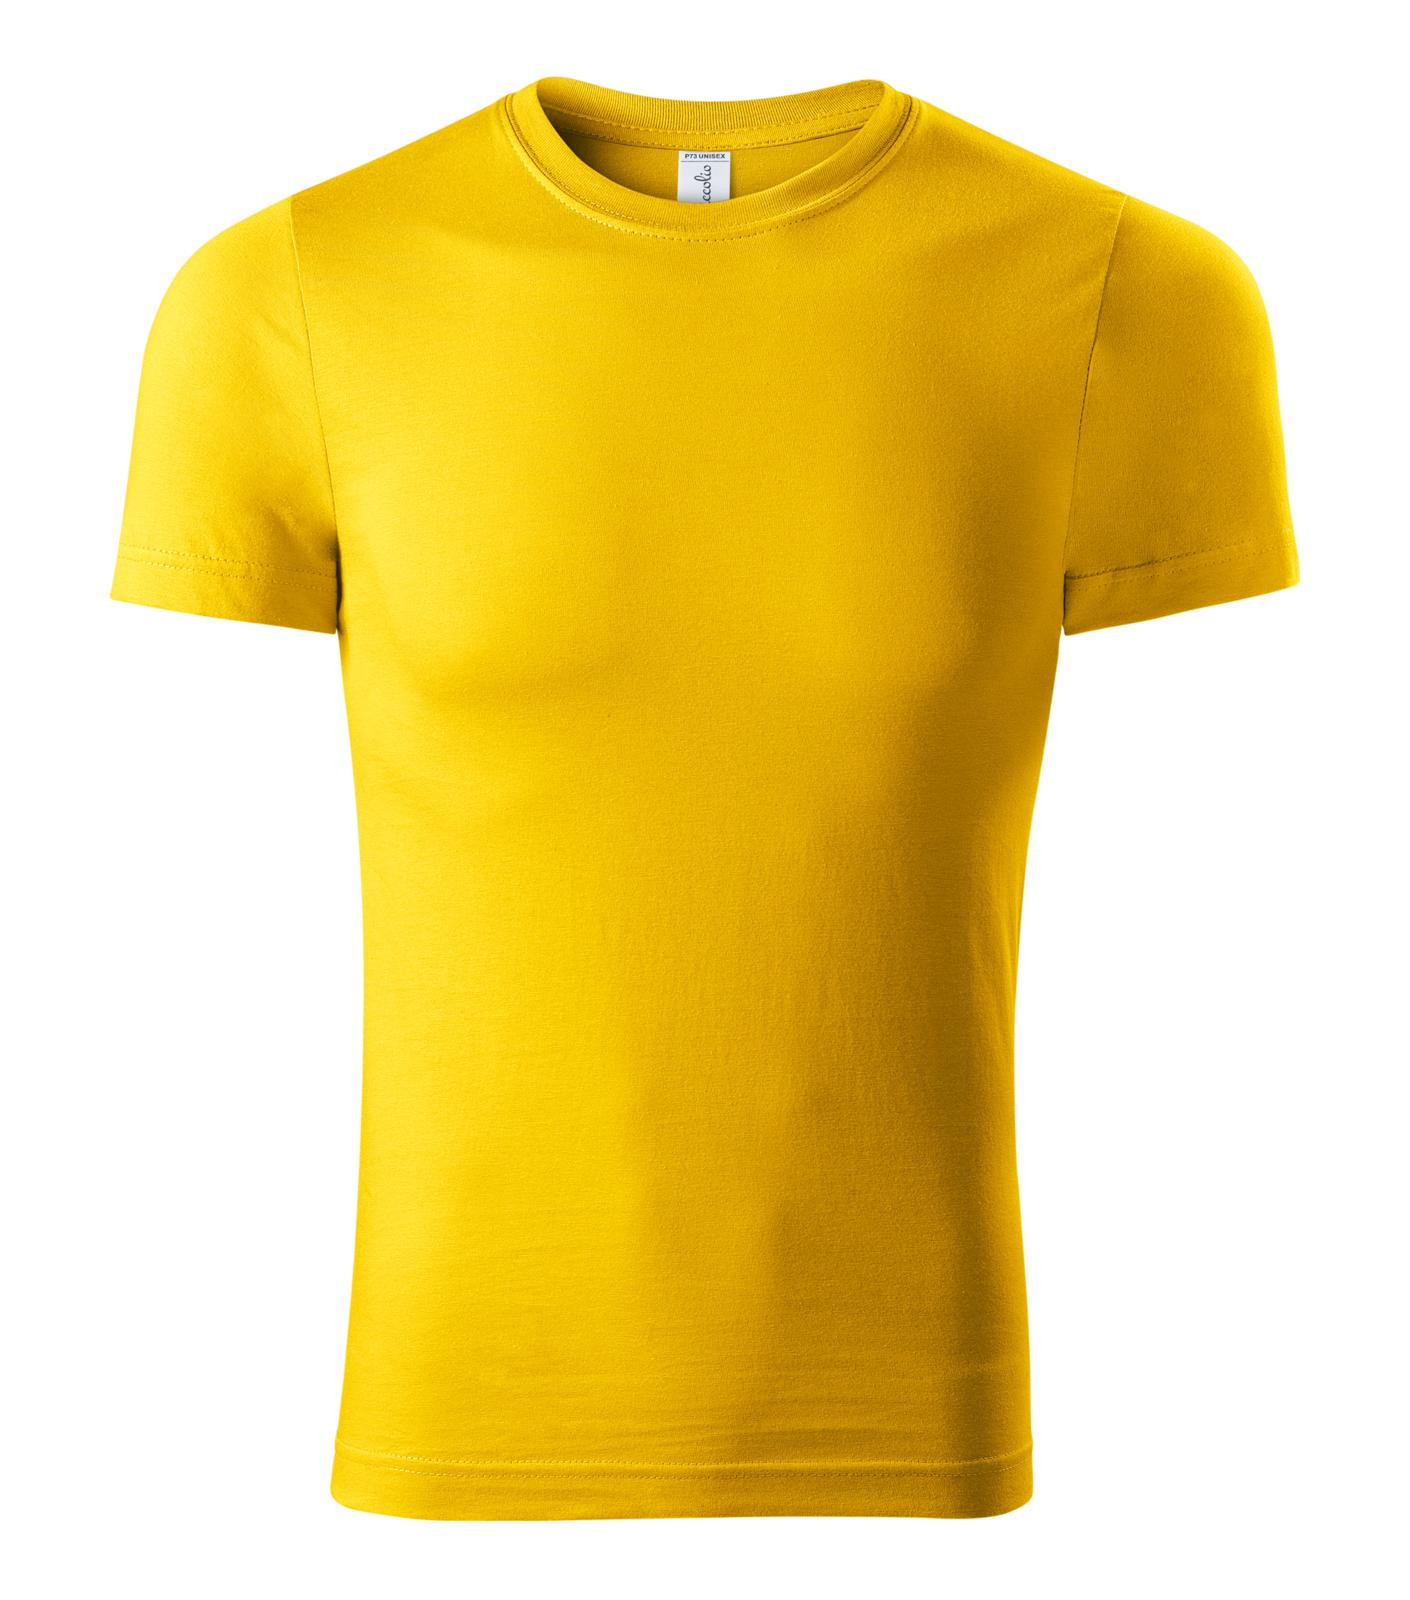 Unisex tričko Piccolio Paint P73 - veľkosť: S, farba: žltá